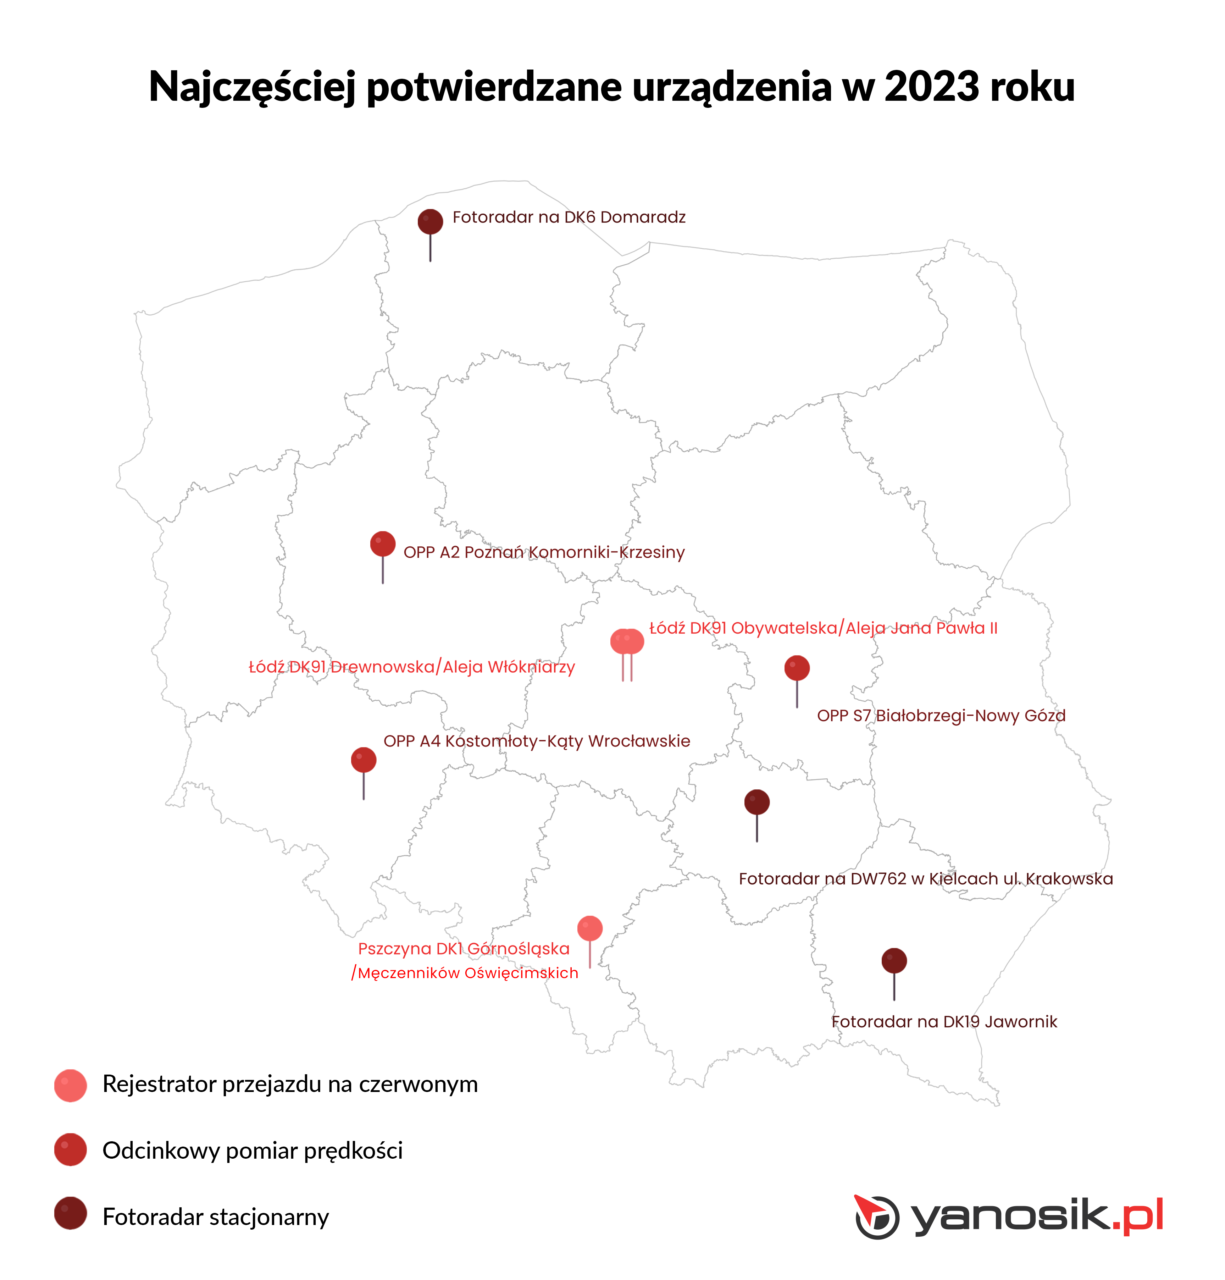 Mapa Polski z zaznaczonymi lokalizacjami najczęściej potwierdzanych urządzeń w 2023 roku, takimi jak fotoradary stacjonarne i odcinkowe pomiary prędkości, na tle konturów województw. Zaznaczenia obejmują między innymi: Fotorejestratory na DK6 w Domaradzu, OPP A2 w Poznaniu, OPP A4 w Kotomierzycach oraz inne urządzenia w różnych częściach kraju. Na dole znajduje się legenda objaśniająca symbole urządzeń oraz logo "Yanosik.pl".